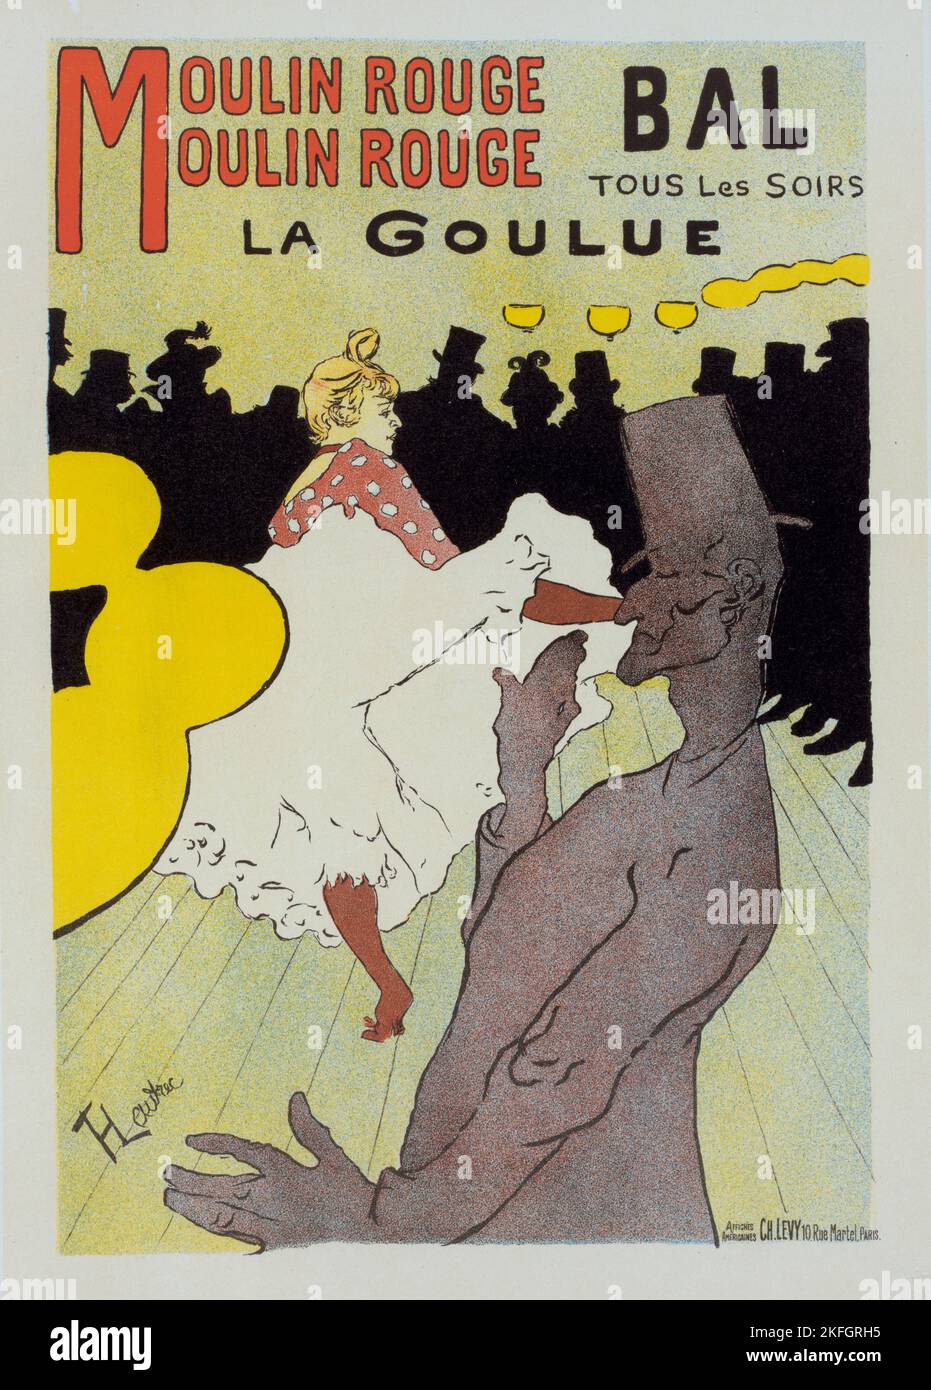 Affiche pour le Moulin Rouge &quot;la Goulue&quot;., c1898. [Publisher: Imprimerie Chaix; Place: Paris] Stock Photo